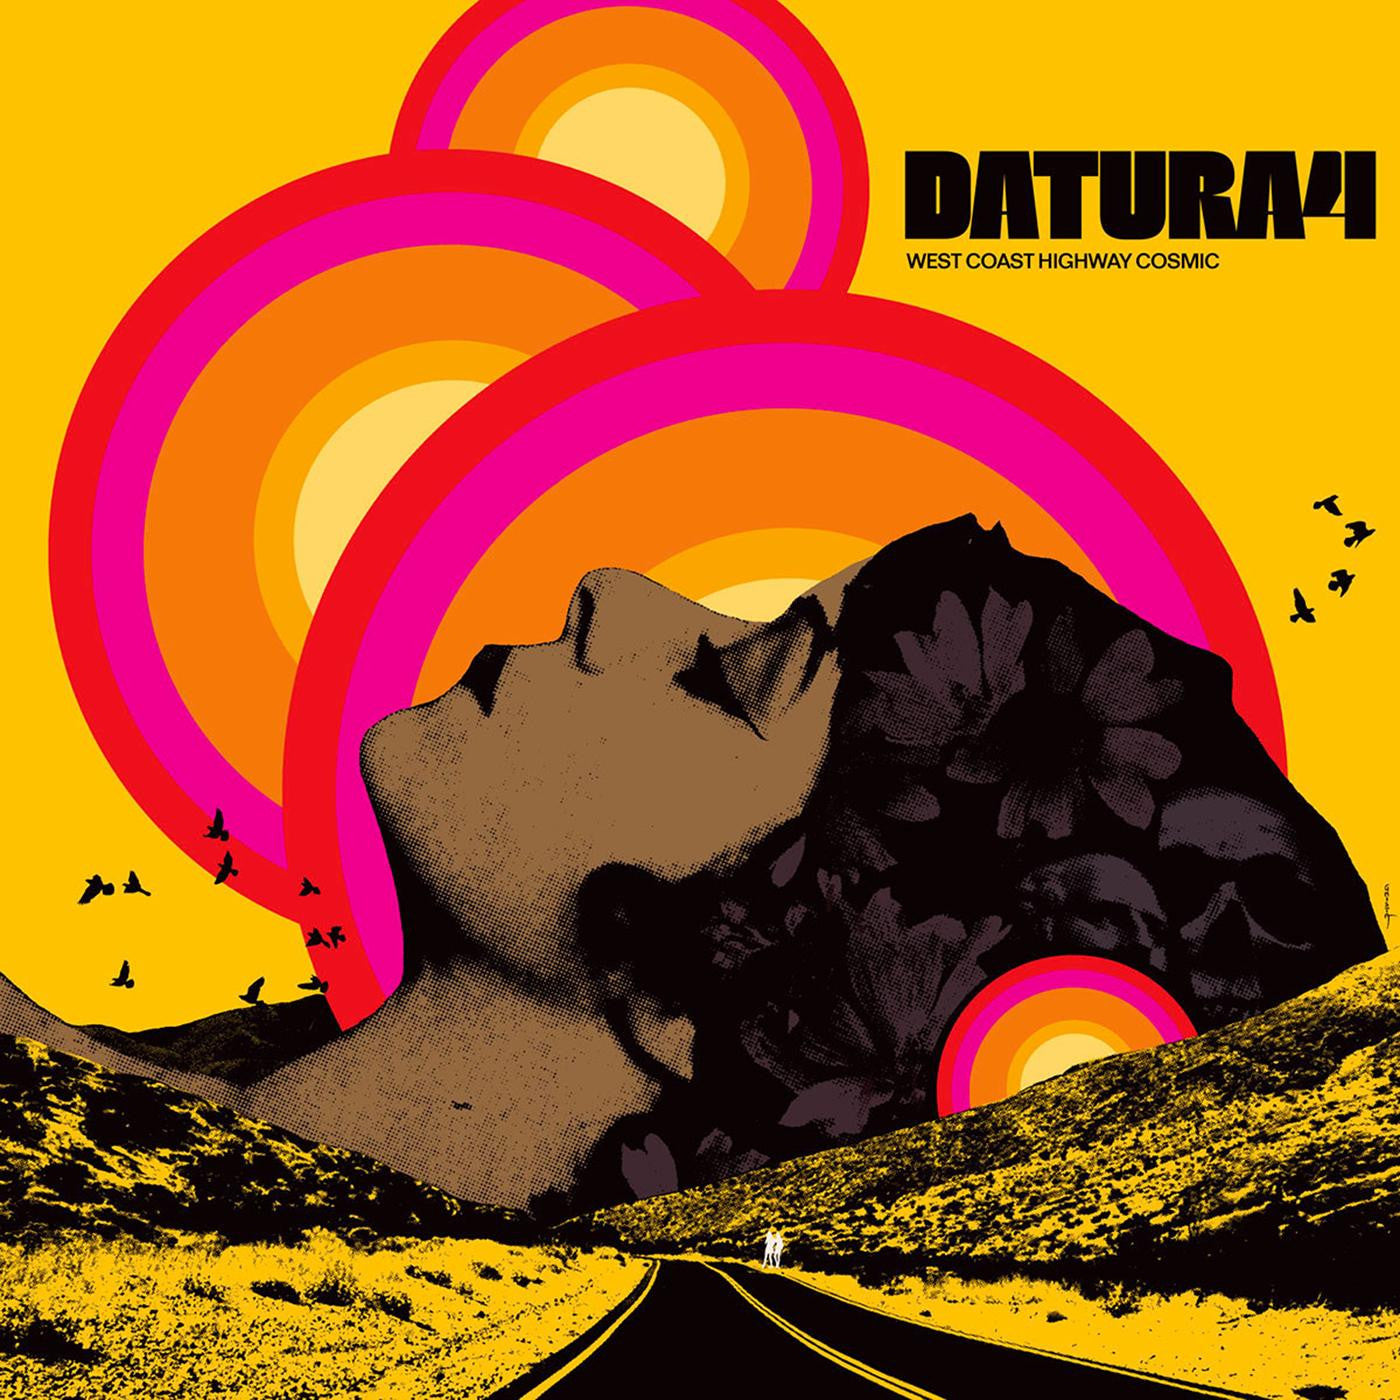 Datura4 - West Coast Highway Cosmic [Splatter Vinyl]